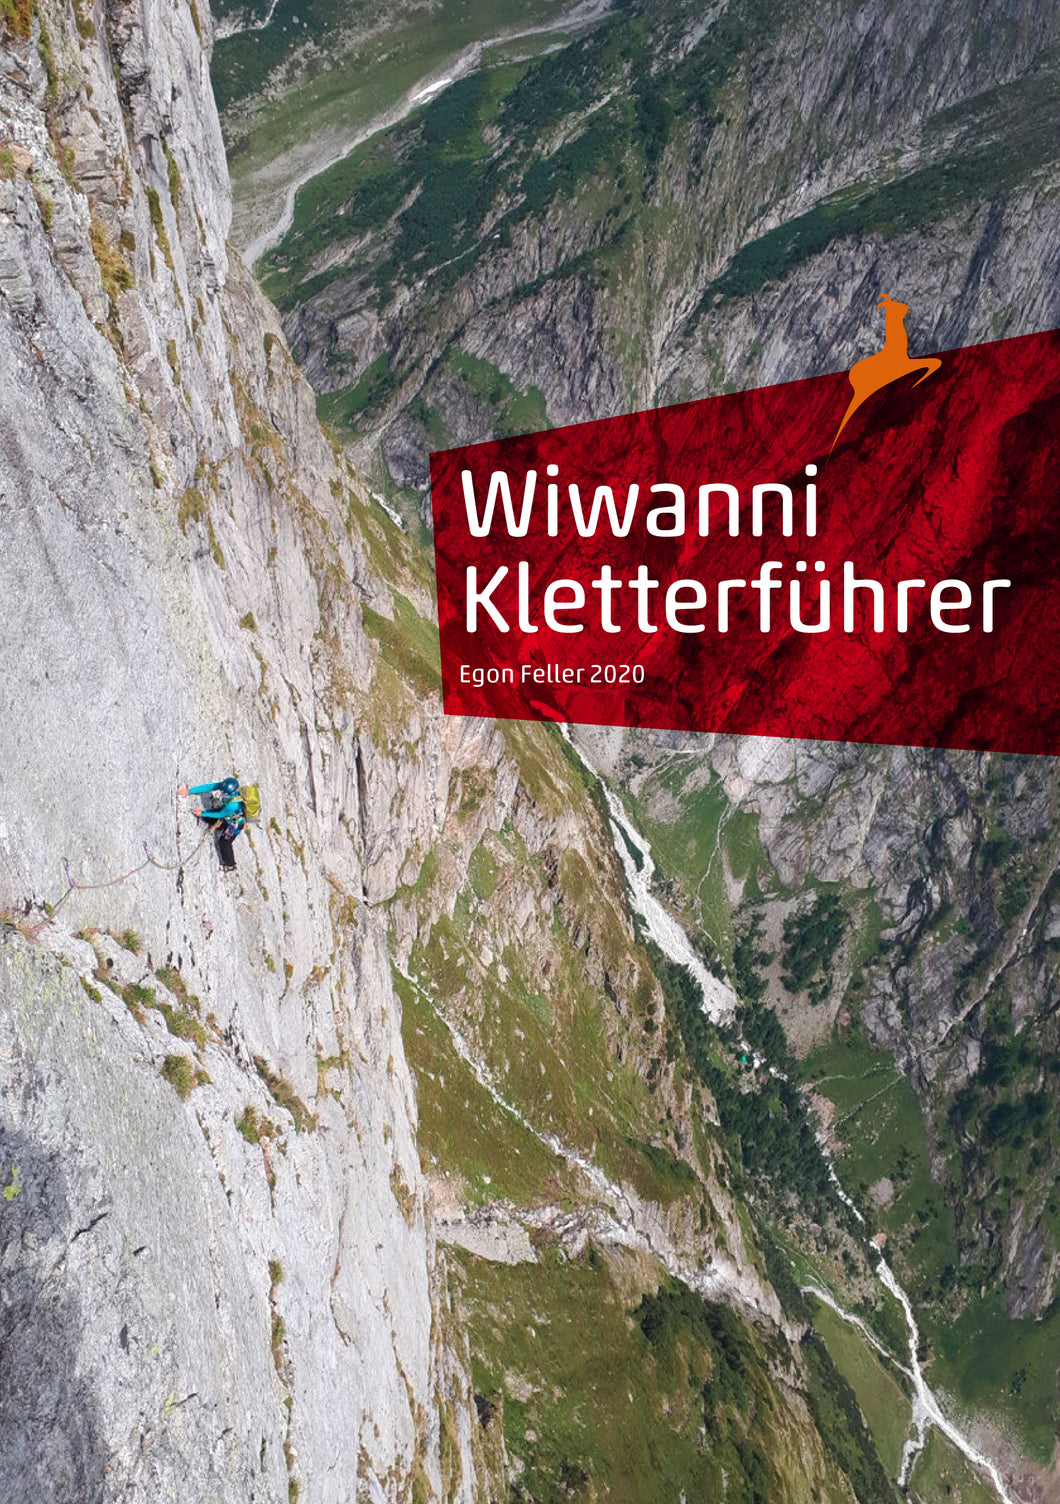 Wiwanni Kletterführer, 2. Auflage 2020